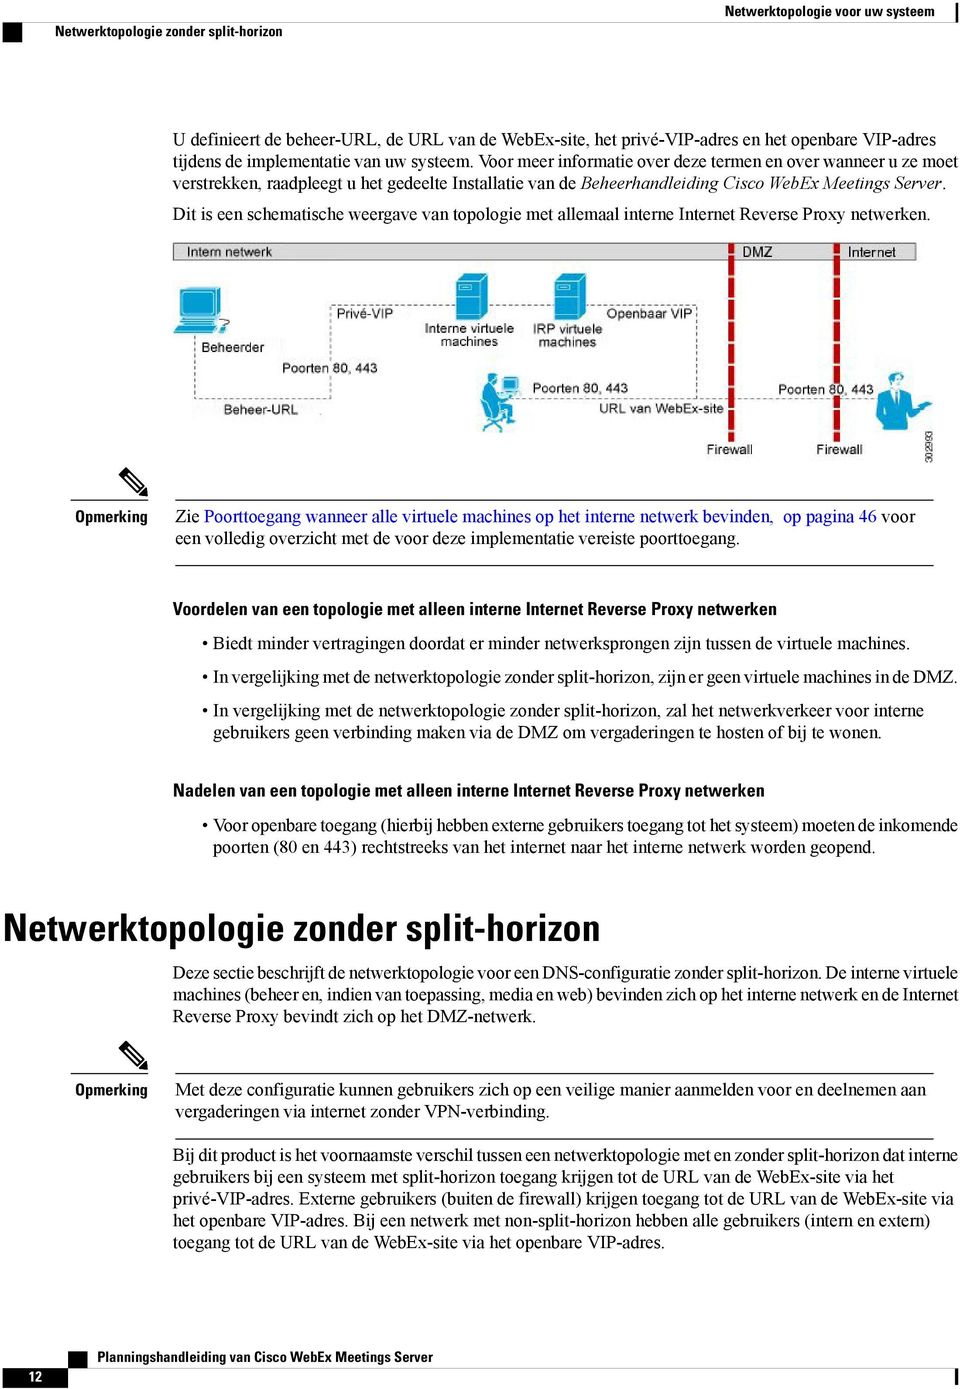 Dit is een schematische weergave van topologie met allemaal interne Internet Reverse Proxy netwerken.